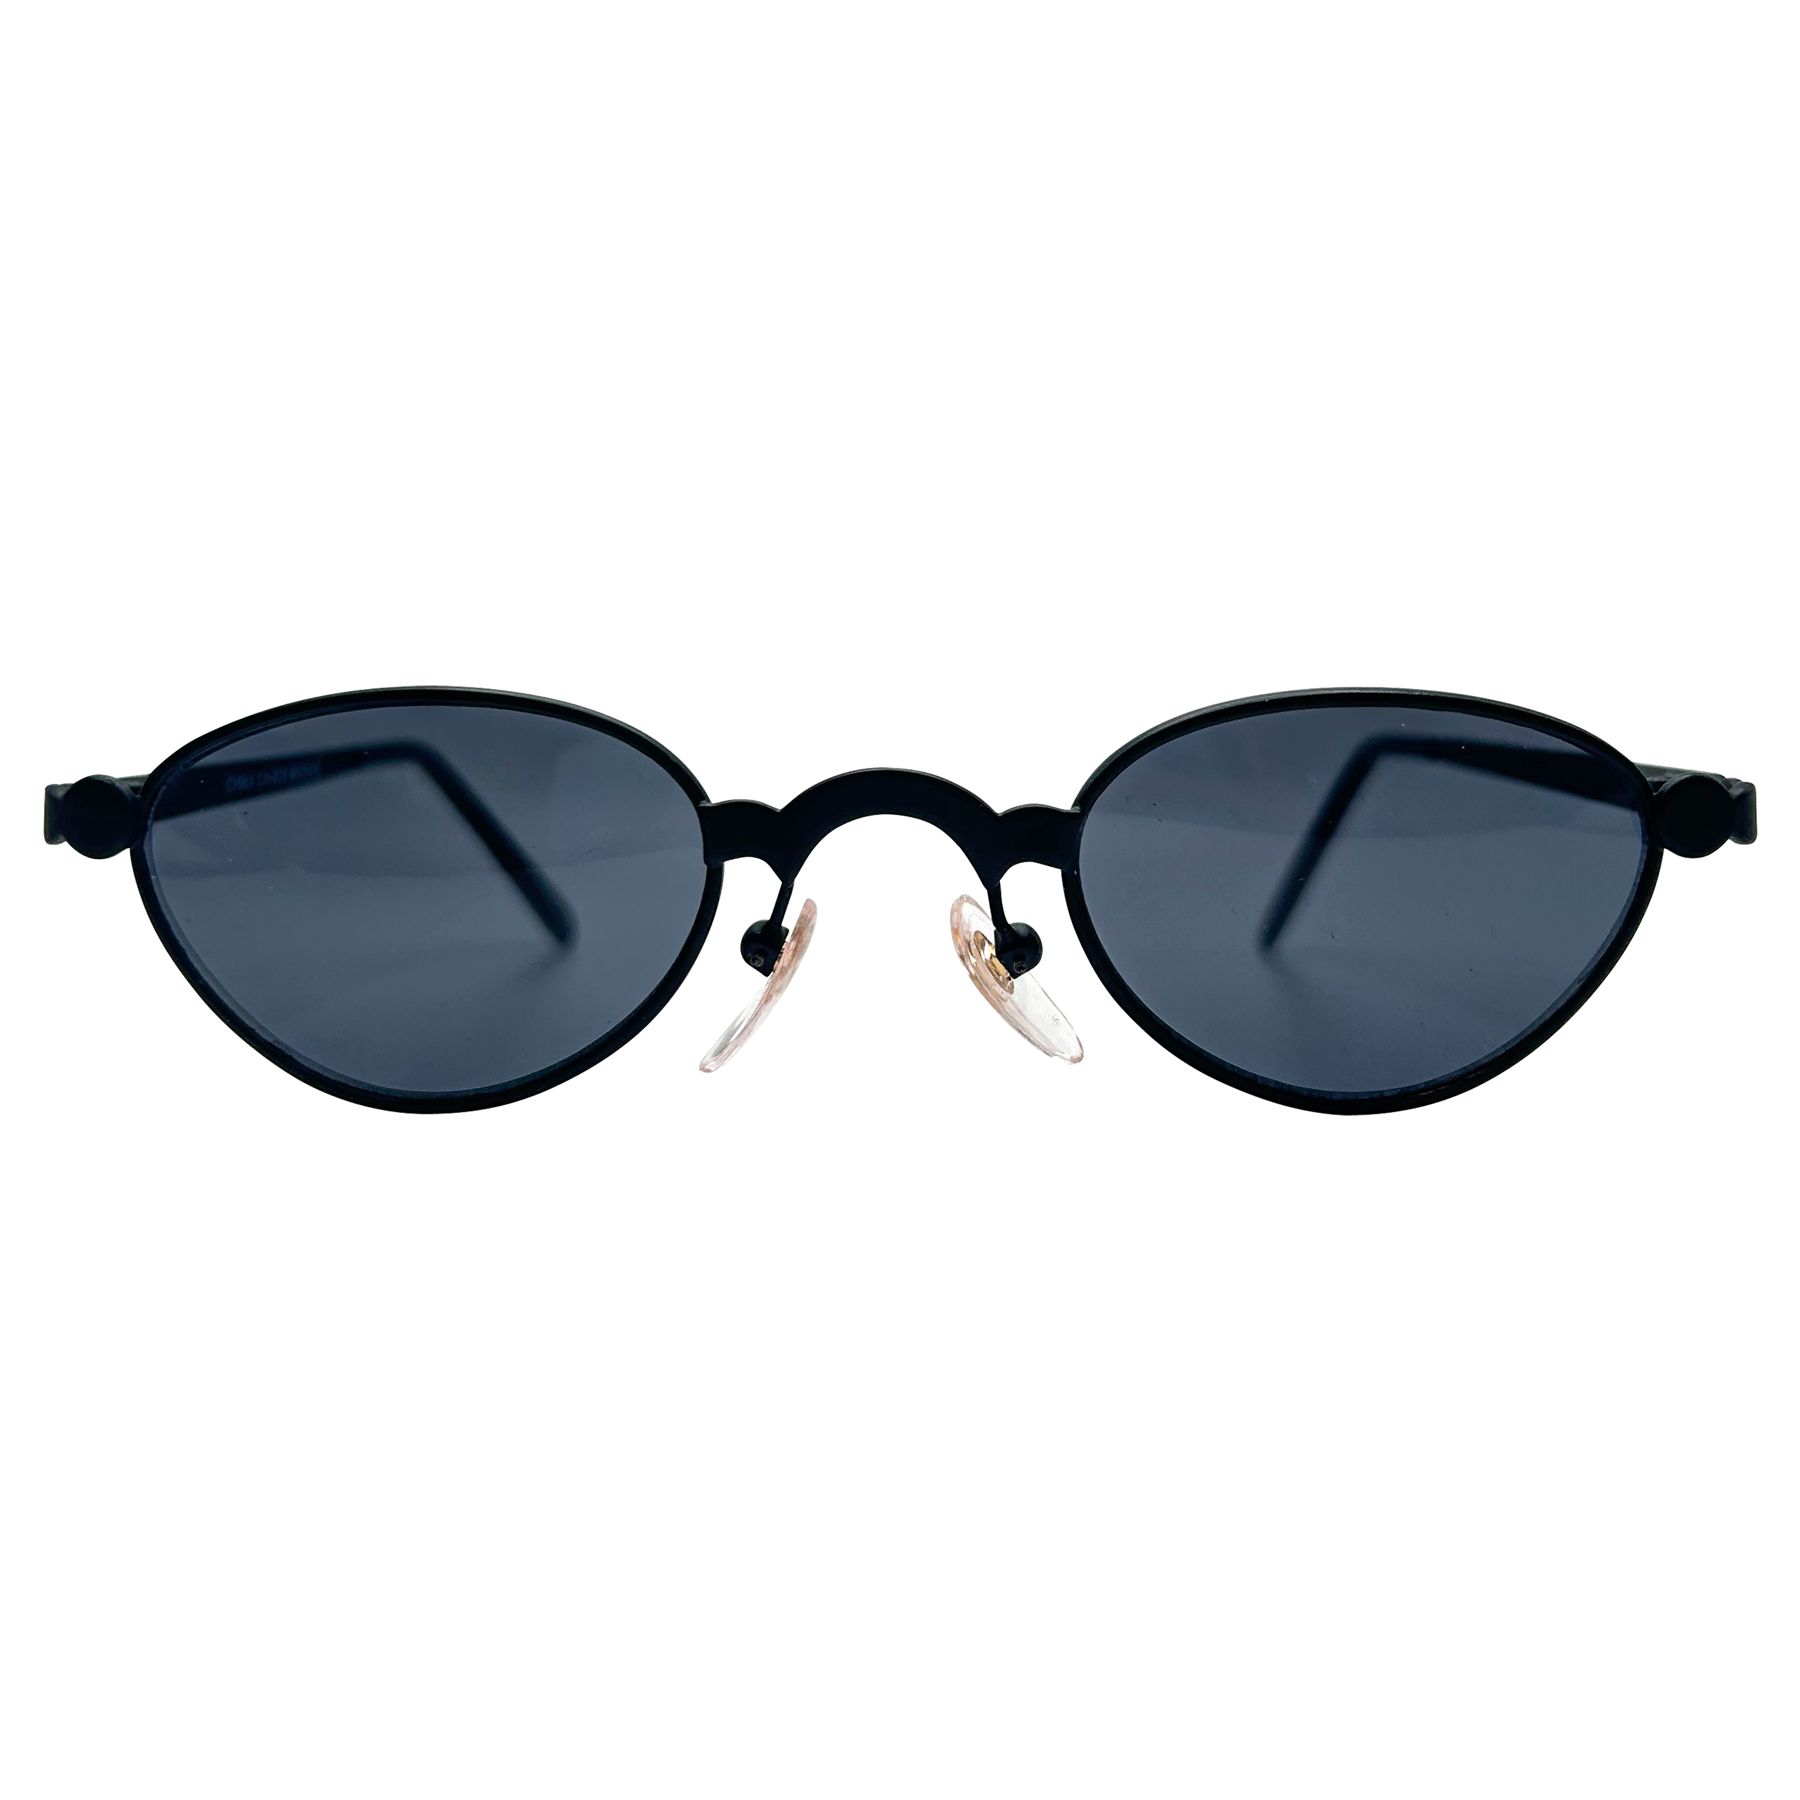 OTIS Micro Industrial 90s Sunglasses